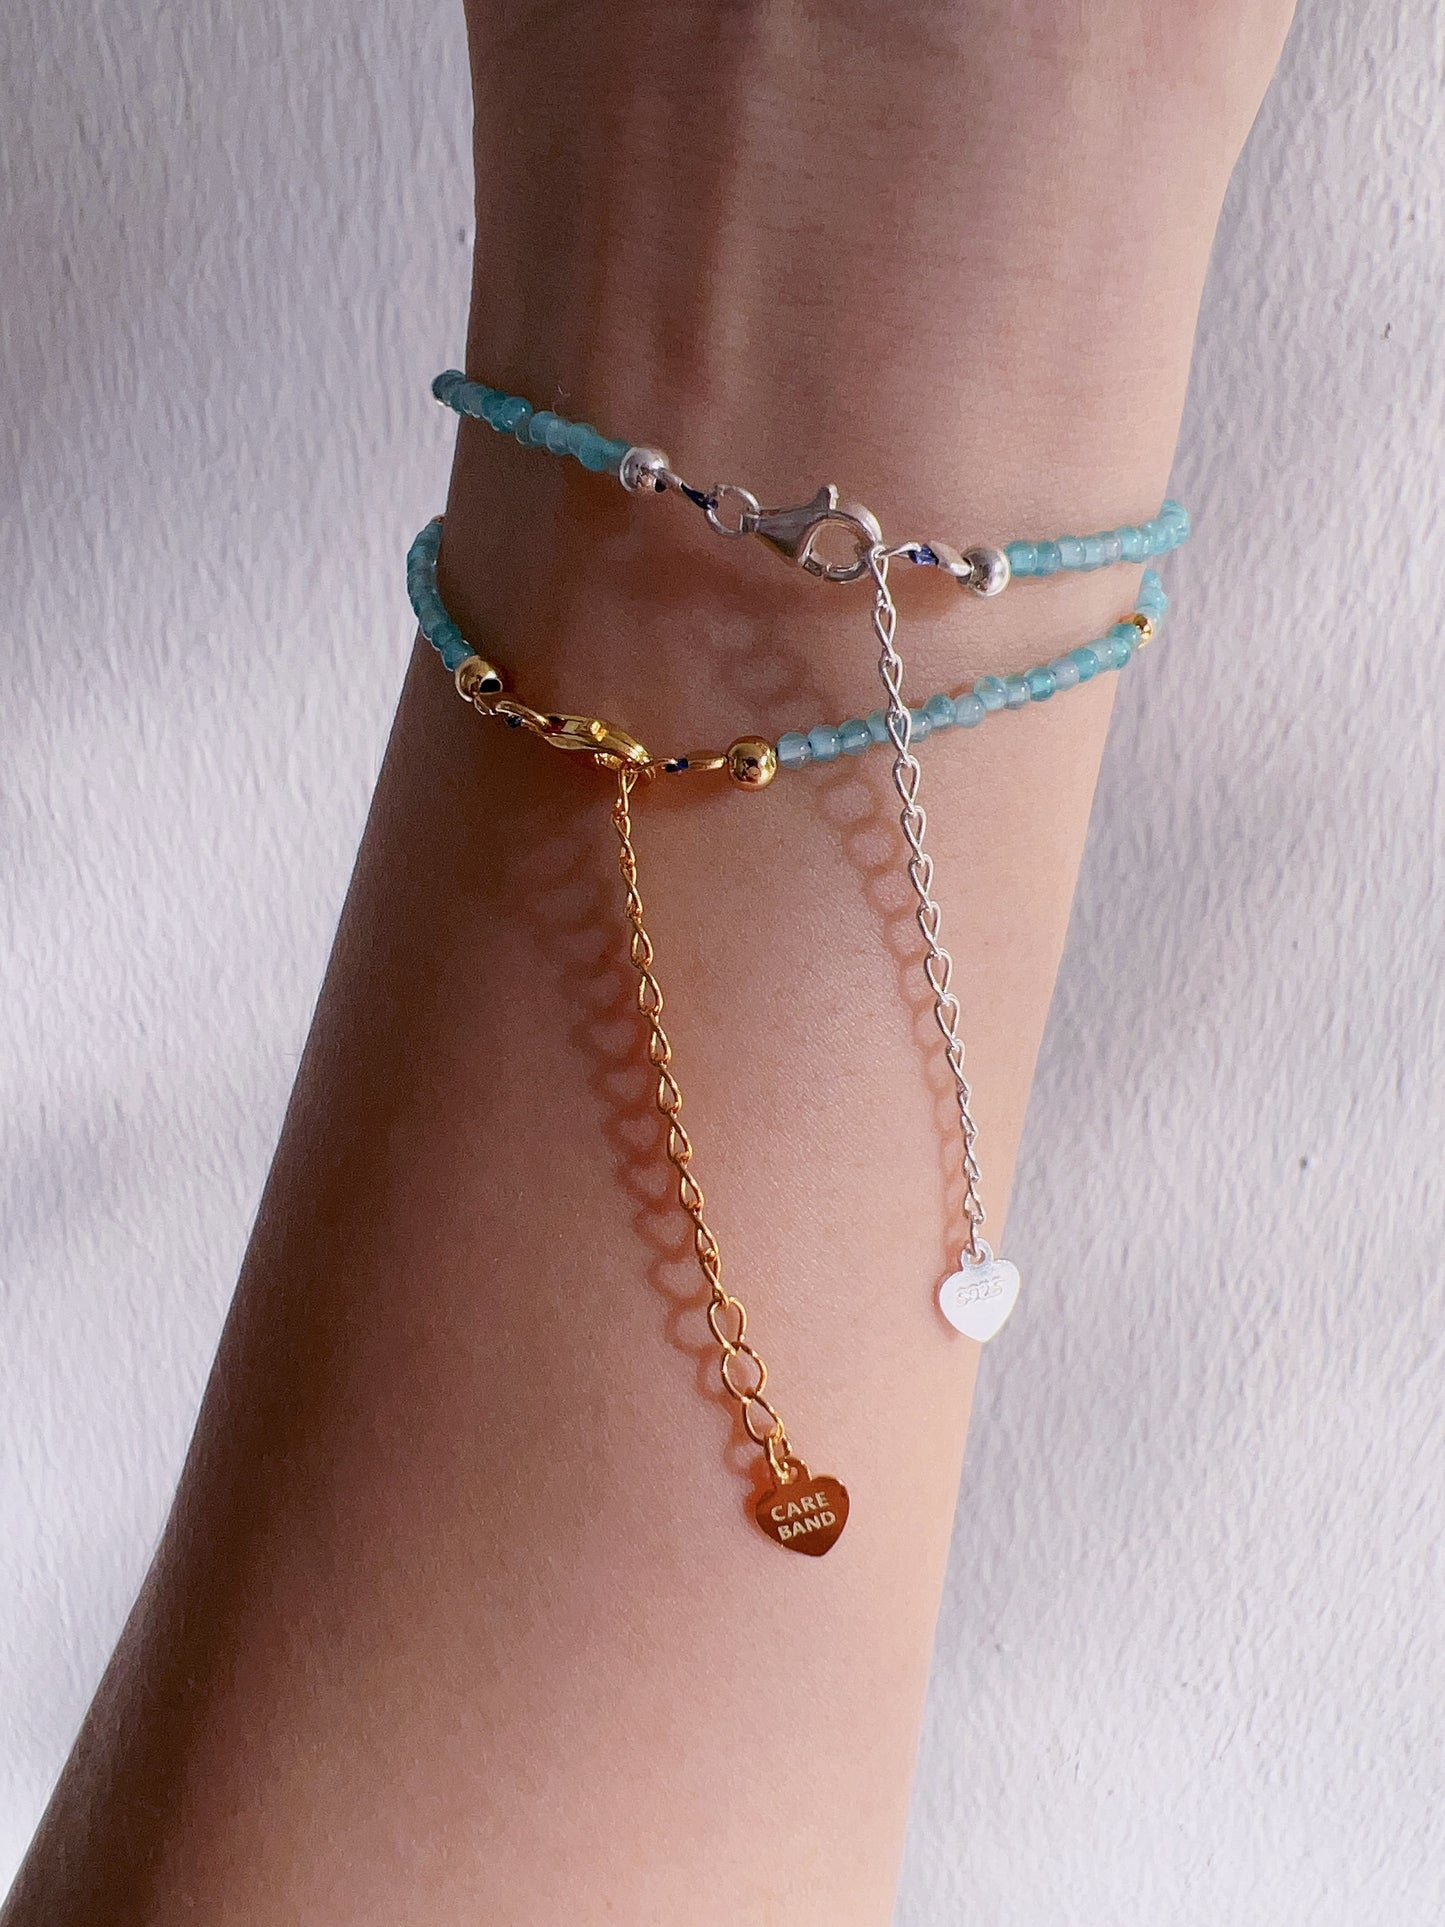 Care Band Amazonite Bracelet